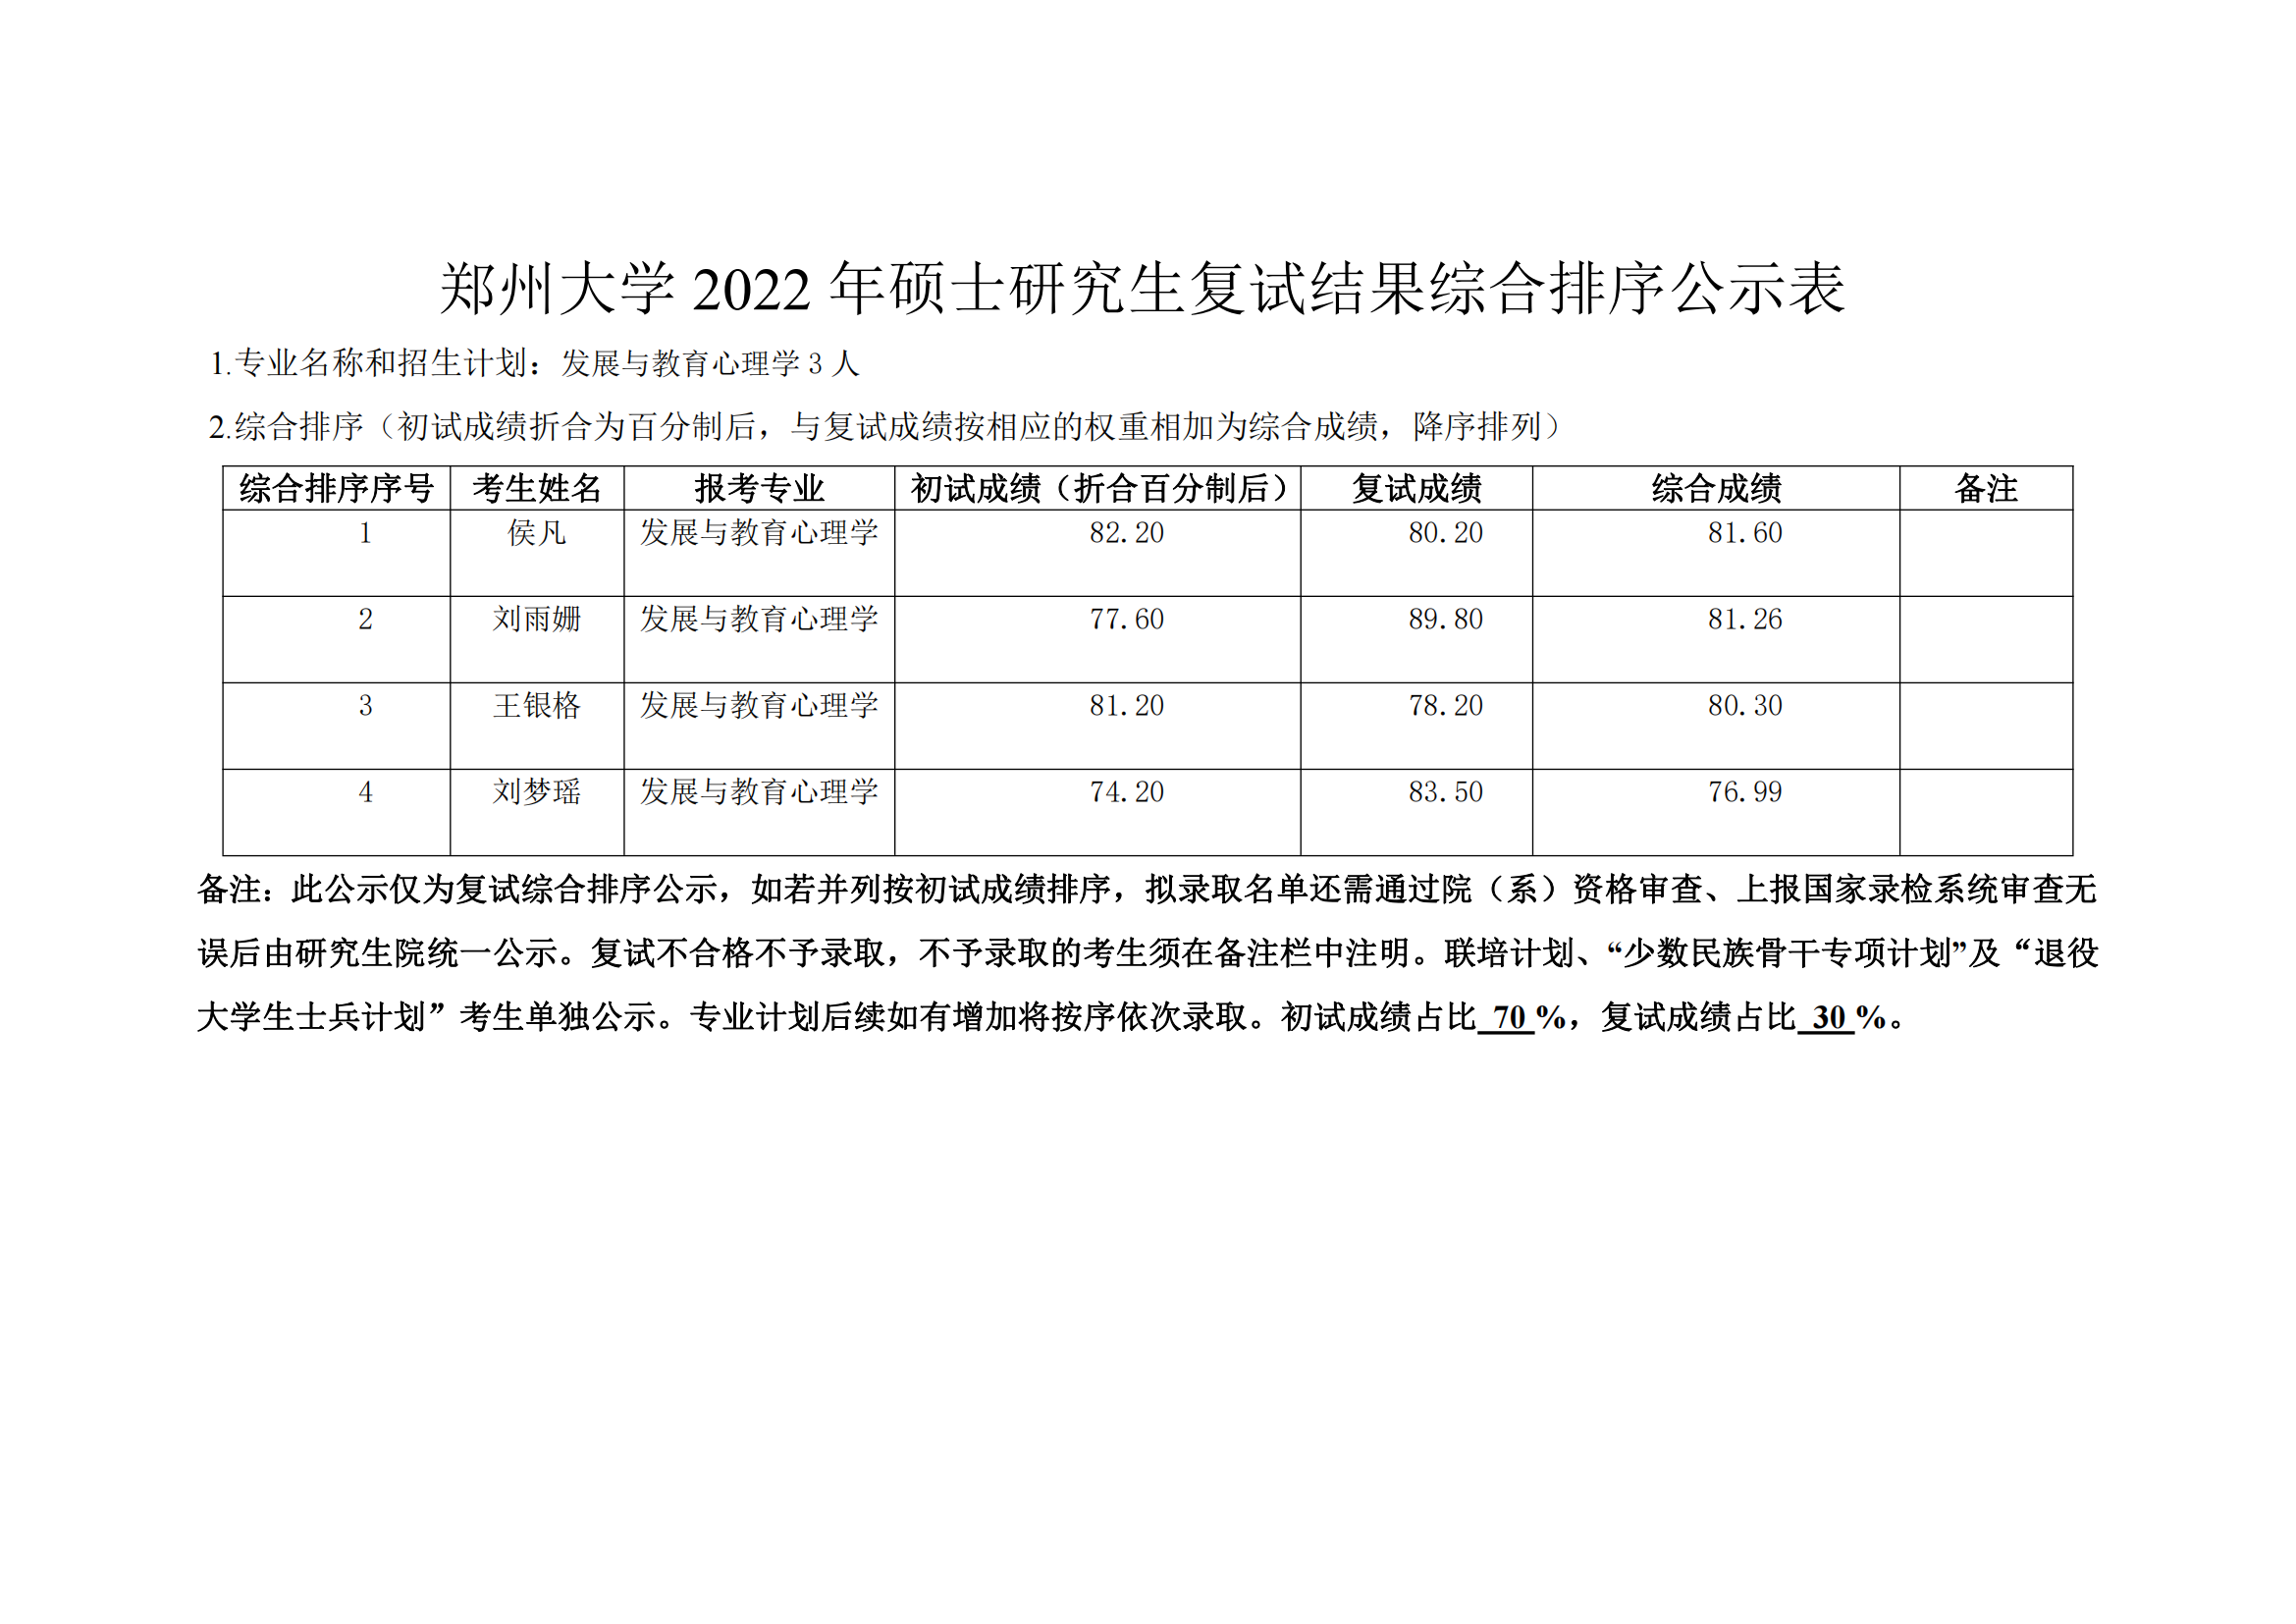 郑州大学教育学院2022年硕士研究生复试结果综合排序公示表_03.png